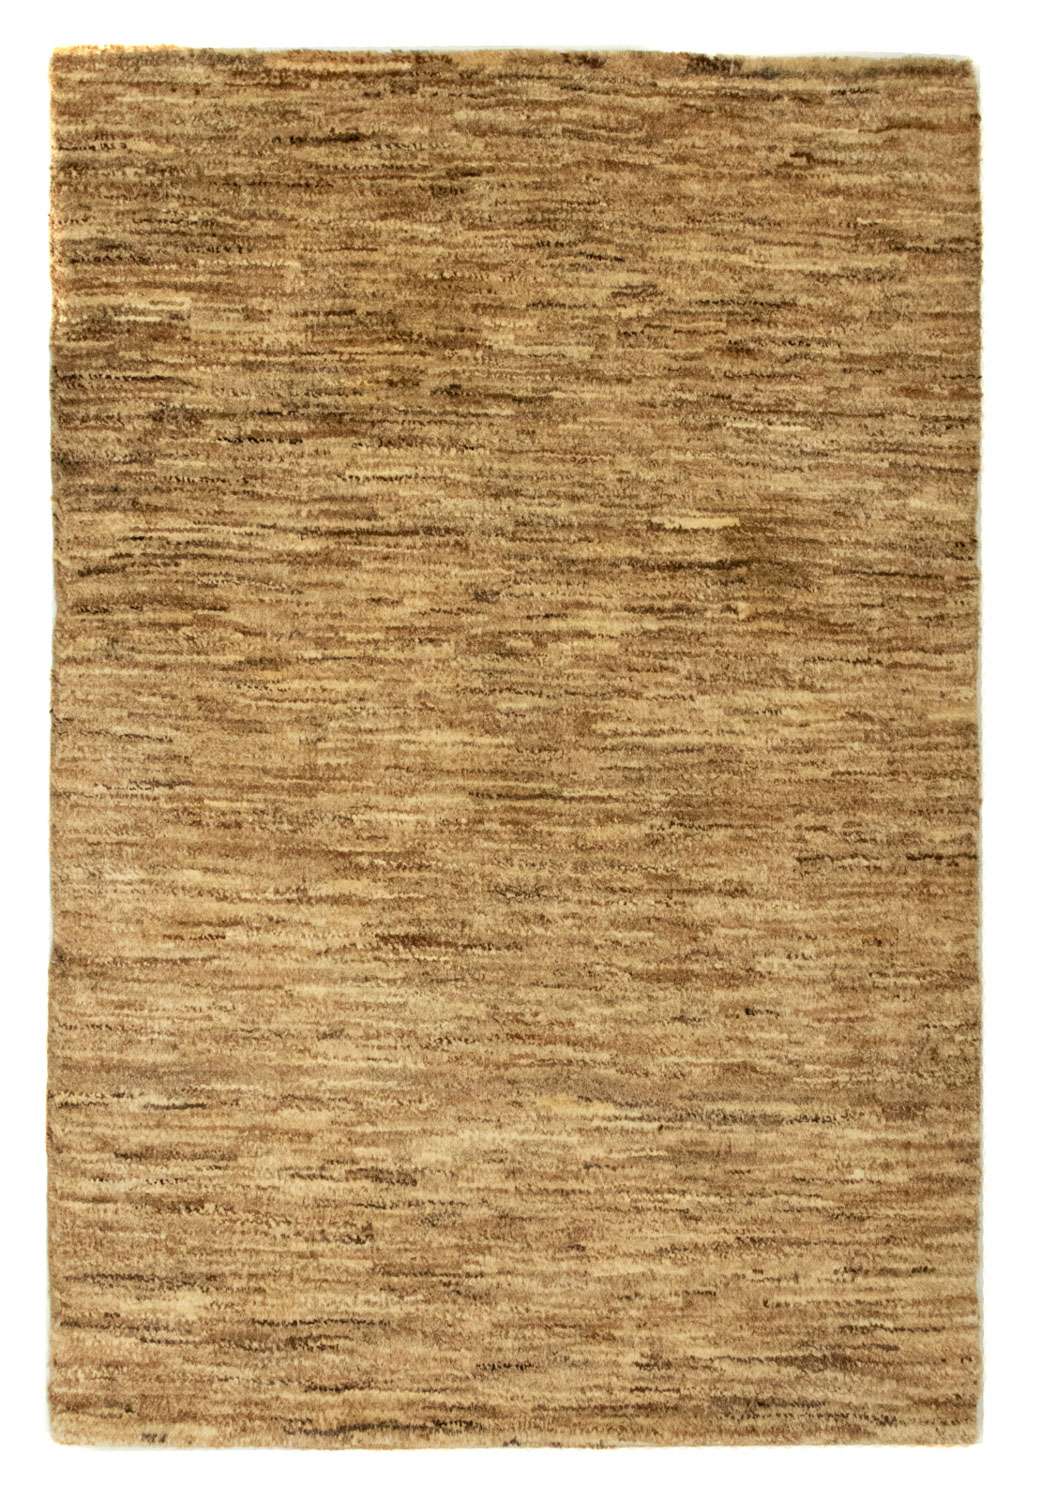 Gabbeh Teppich - Indus 92 x 61 cm